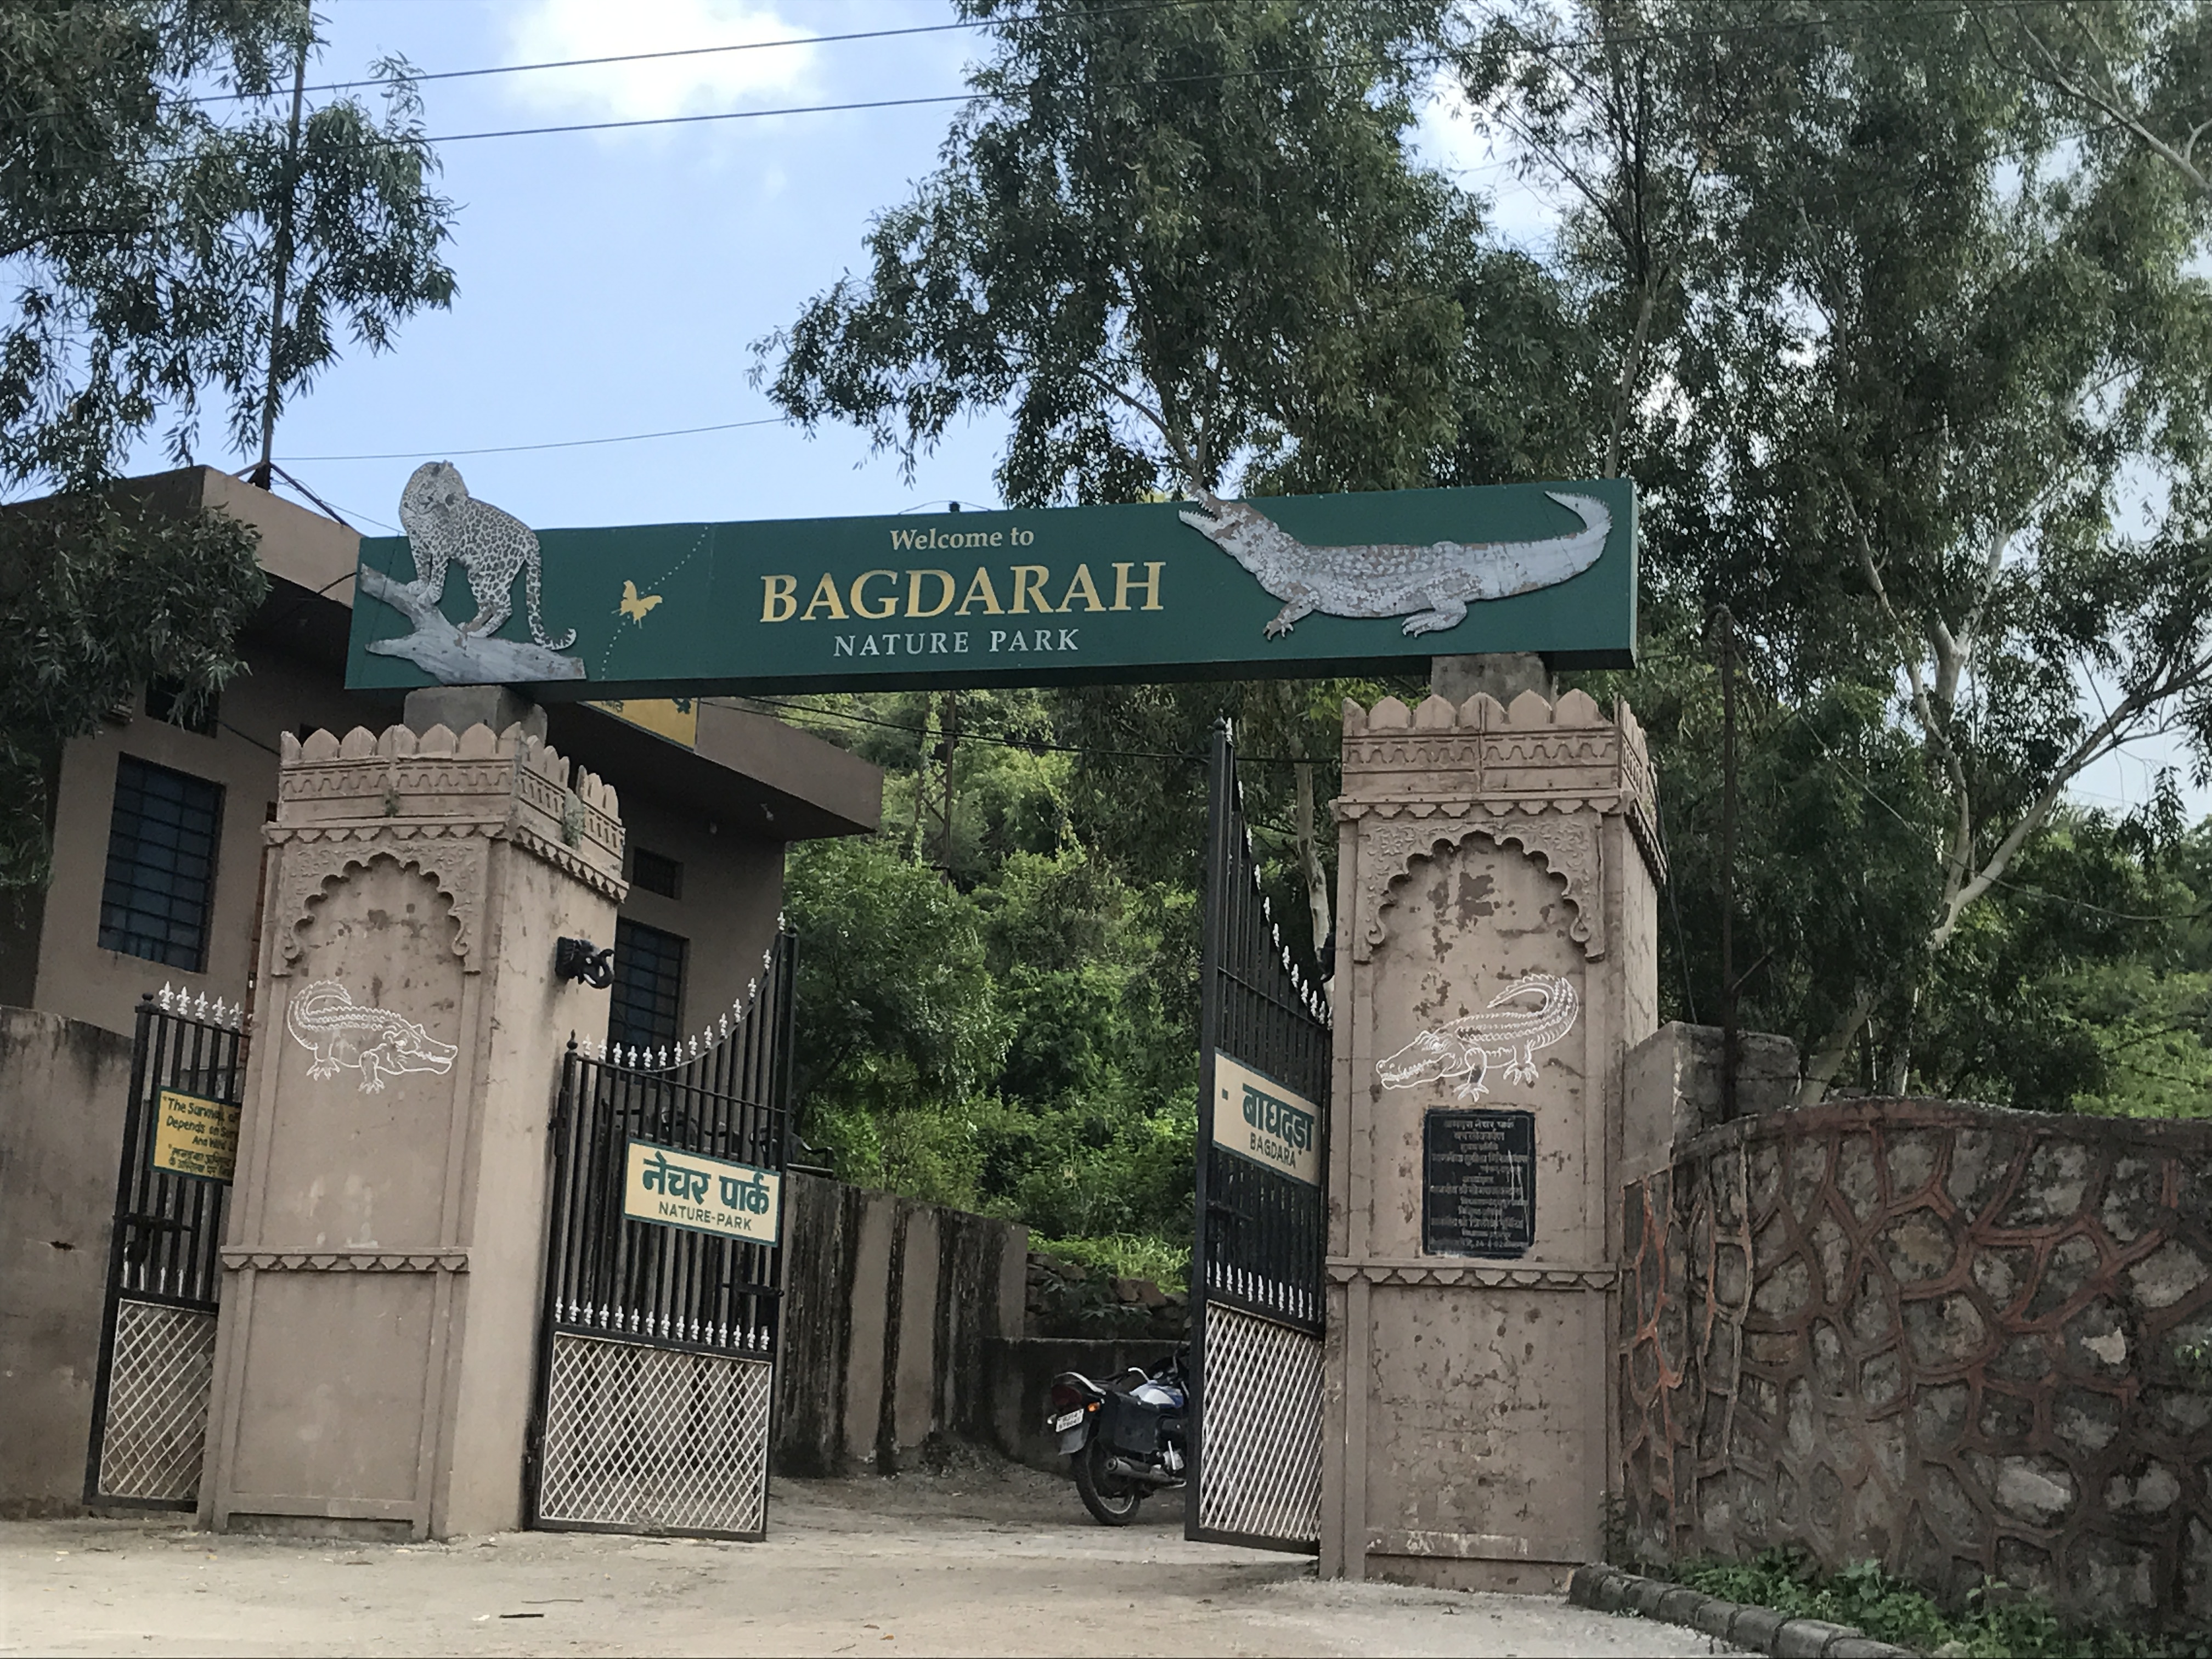 baghdara nature park